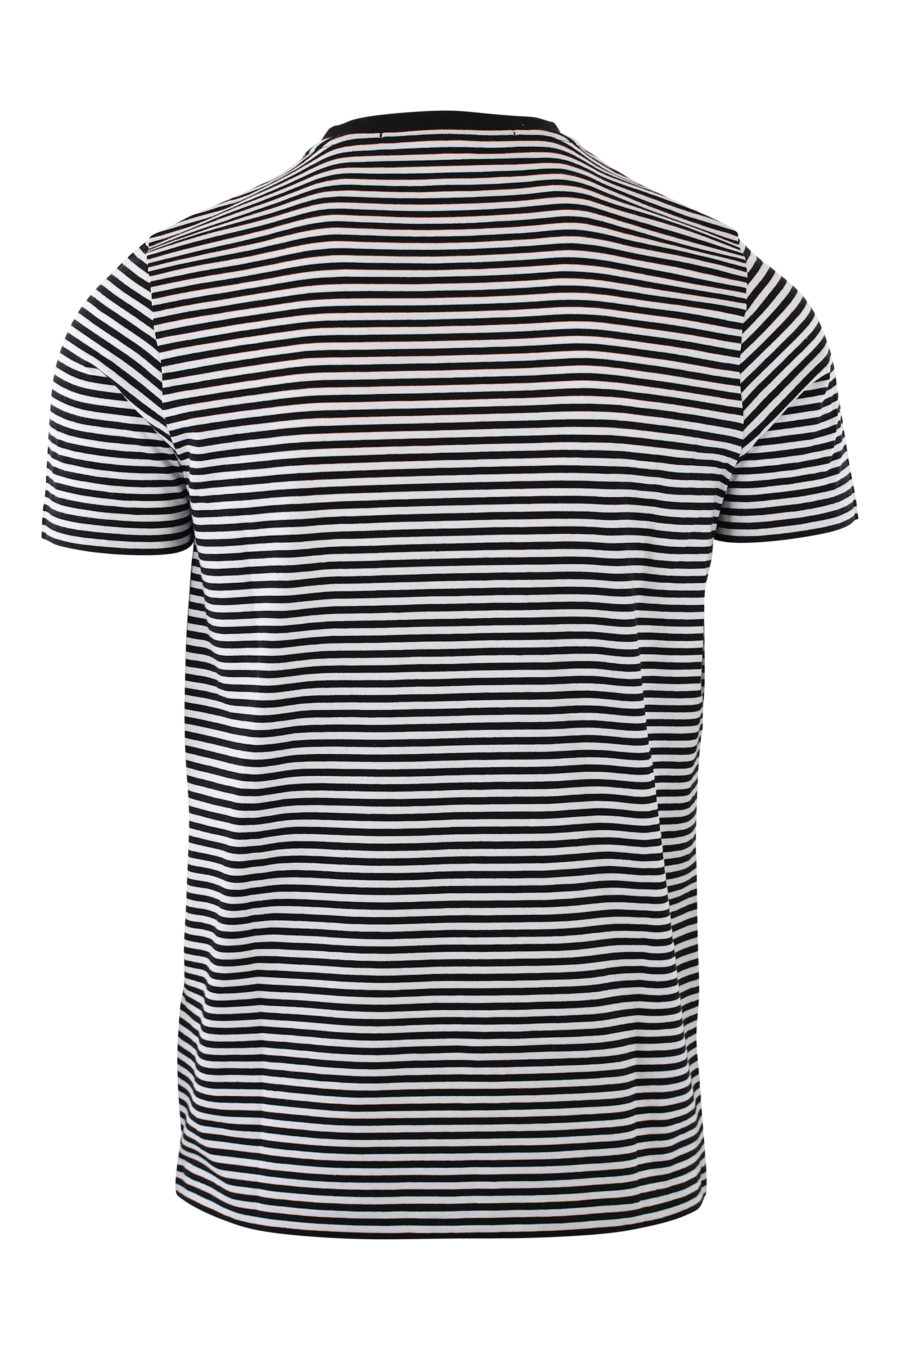 Camiseta de rayas blancas y negras con logo negro en goma - IMG 2095